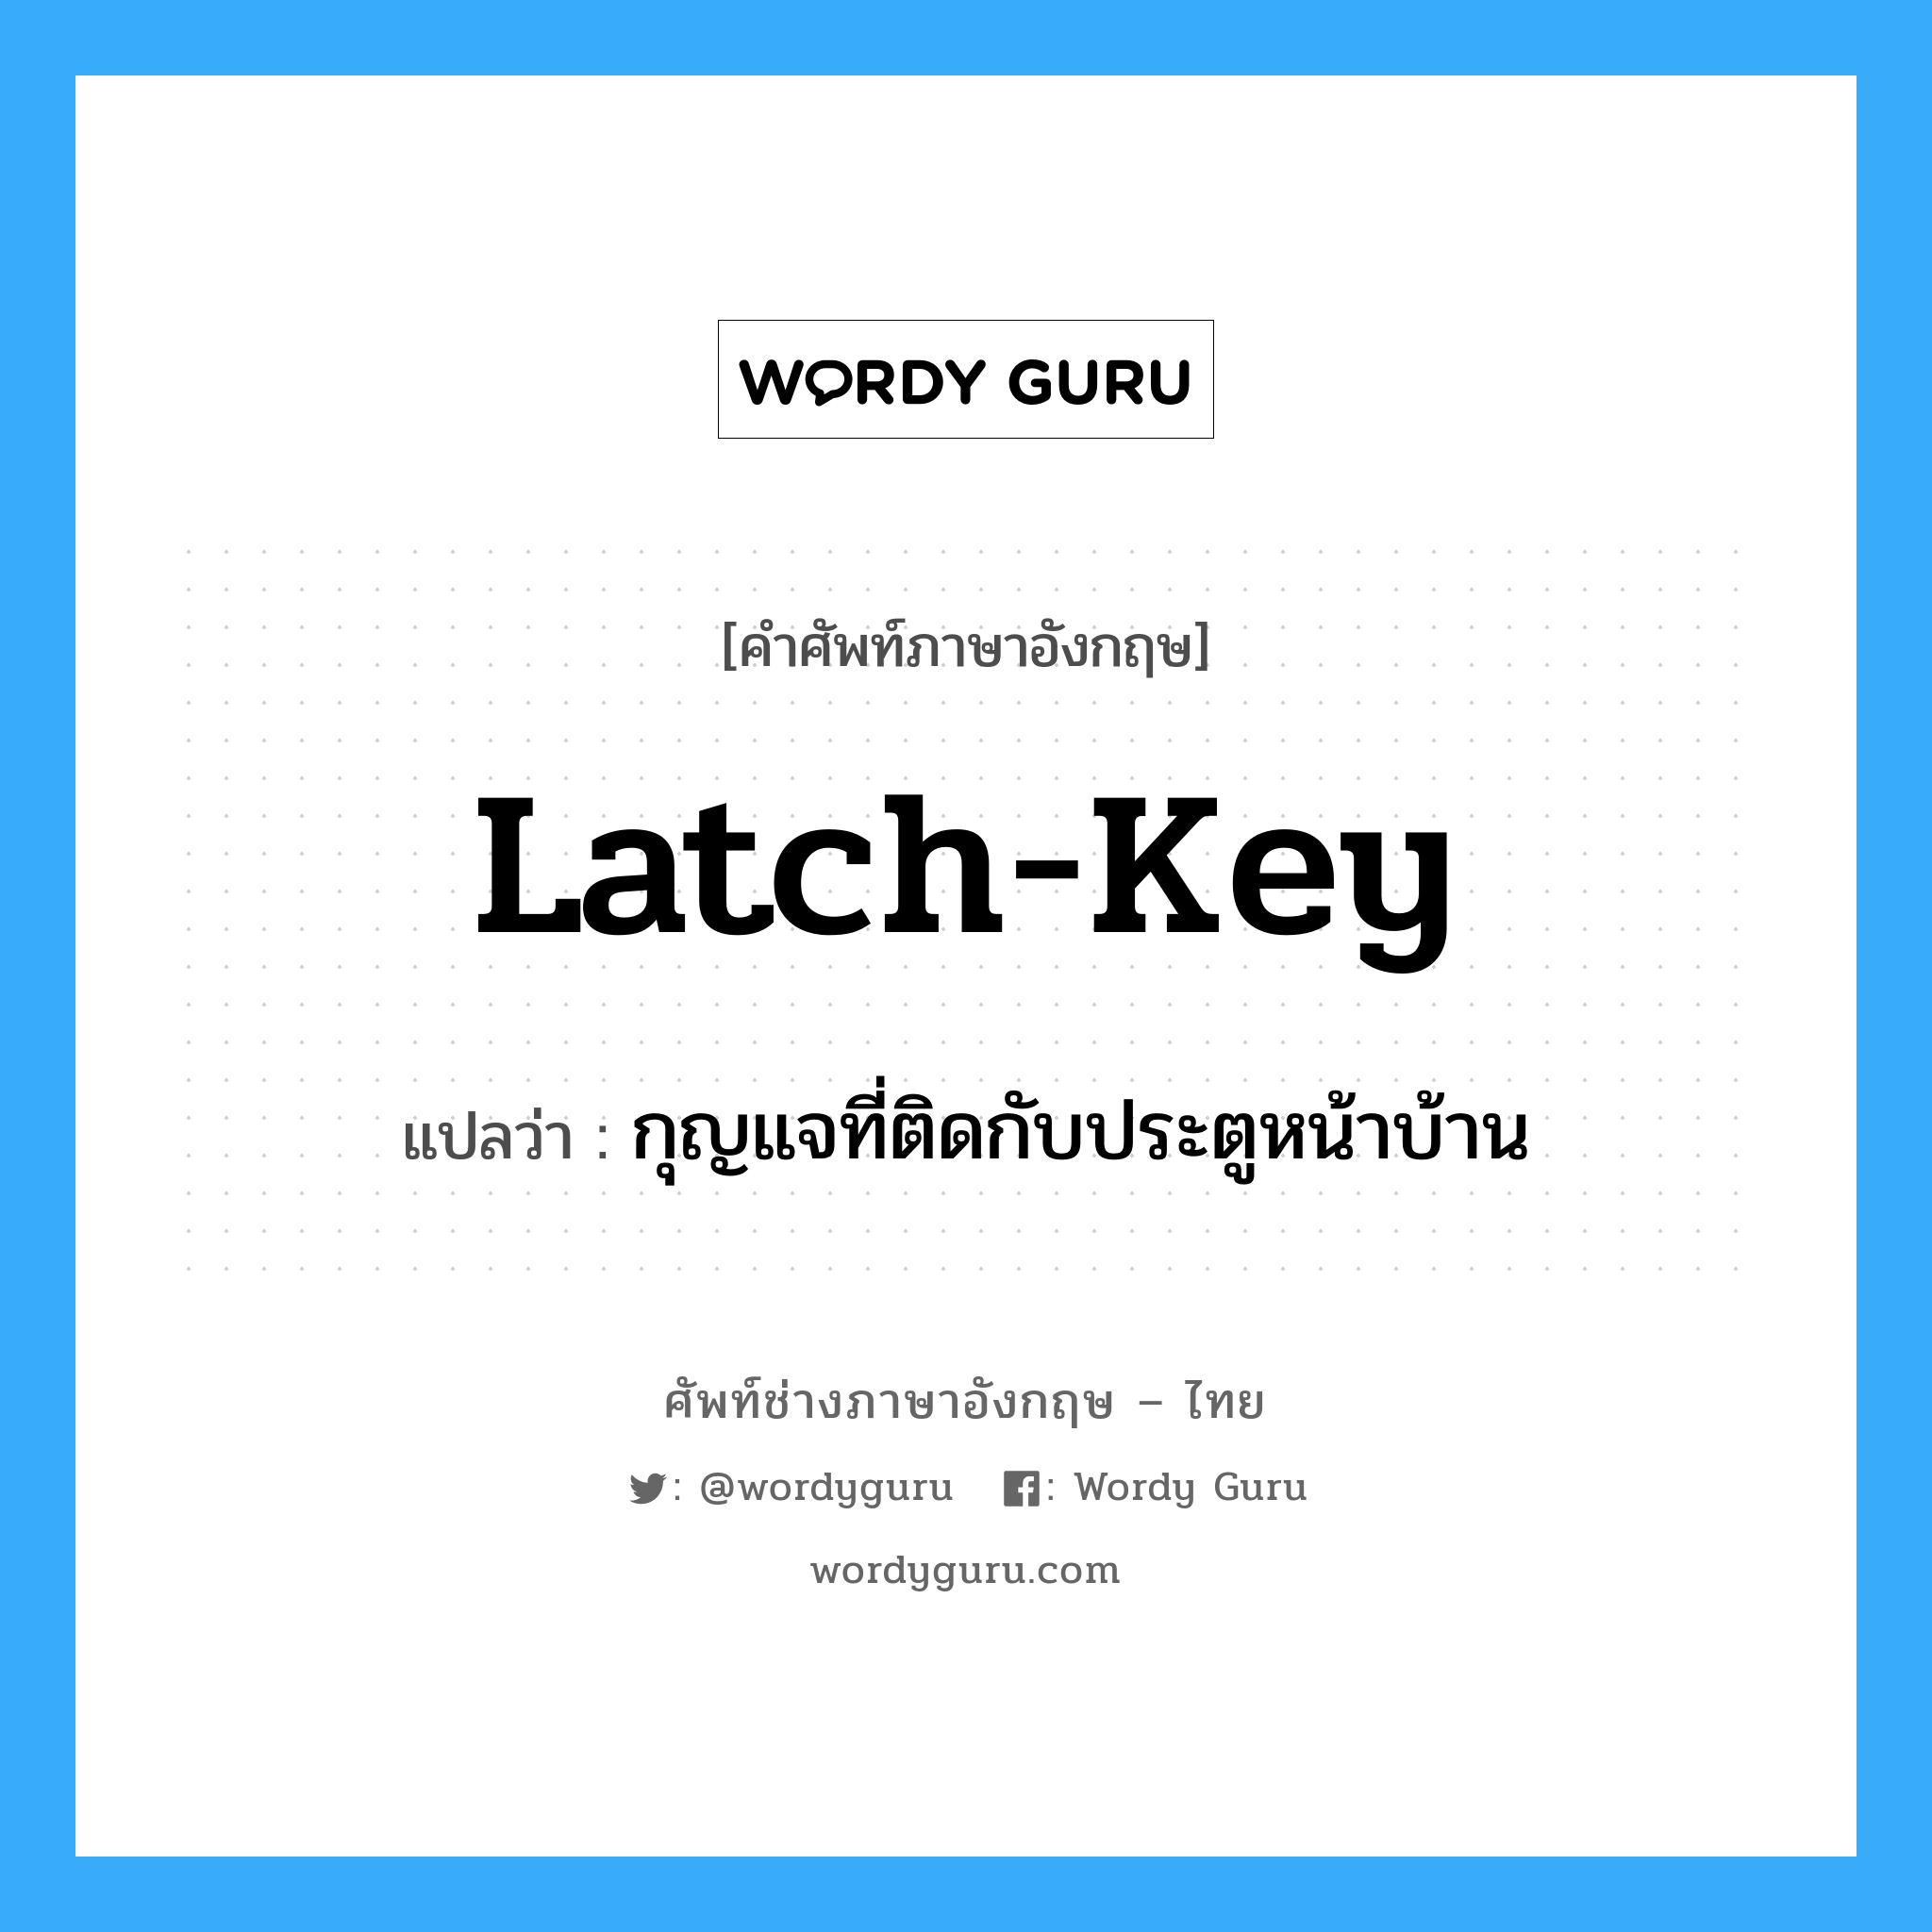 กุญแจที่ติดกับประตูหน้าบ้าน ภาษาอังกฤษ?, คำศัพท์ช่างภาษาอังกฤษ - ไทย กุญแจที่ติดกับประตูหน้าบ้าน คำศัพท์ภาษาอังกฤษ กุญแจที่ติดกับประตูหน้าบ้าน แปลว่า latch-key